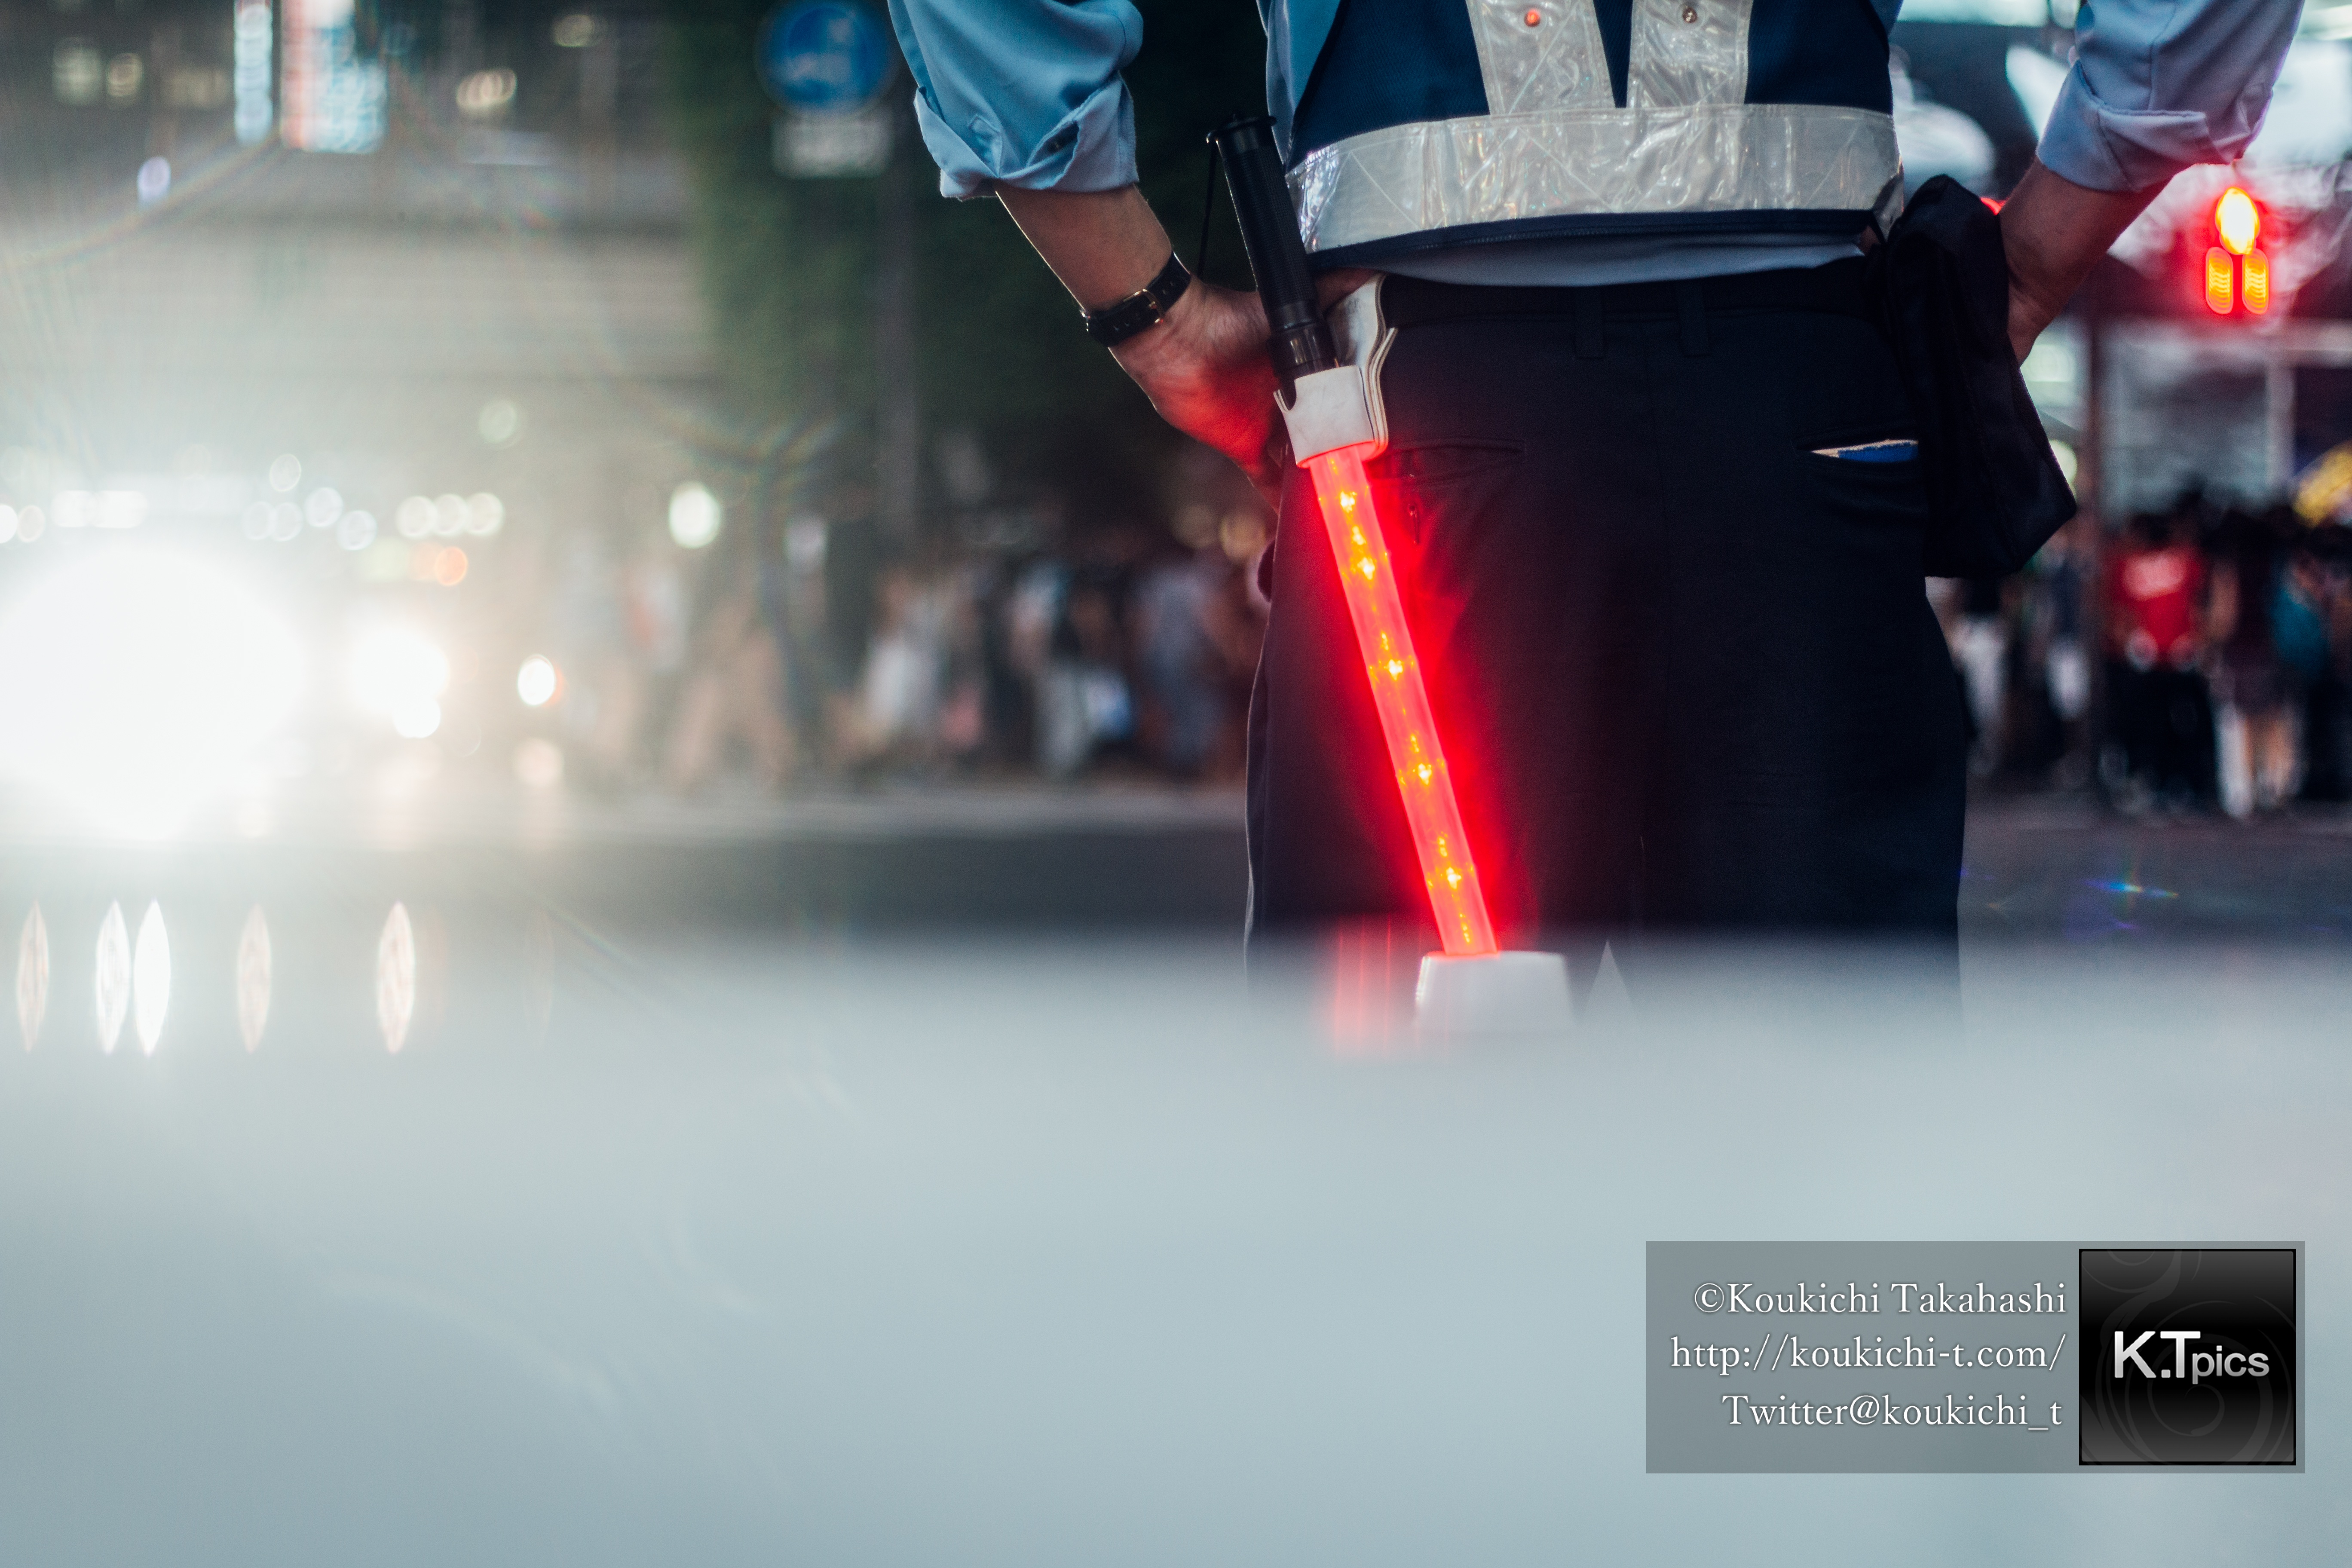 もしソール・ライターが渋谷を写真撮影したら。「ソール・ライターに魅せられて。」Inspired by Saul Leiter - Shooted by Koukichi Takahashi at Shibuya_MG_0191